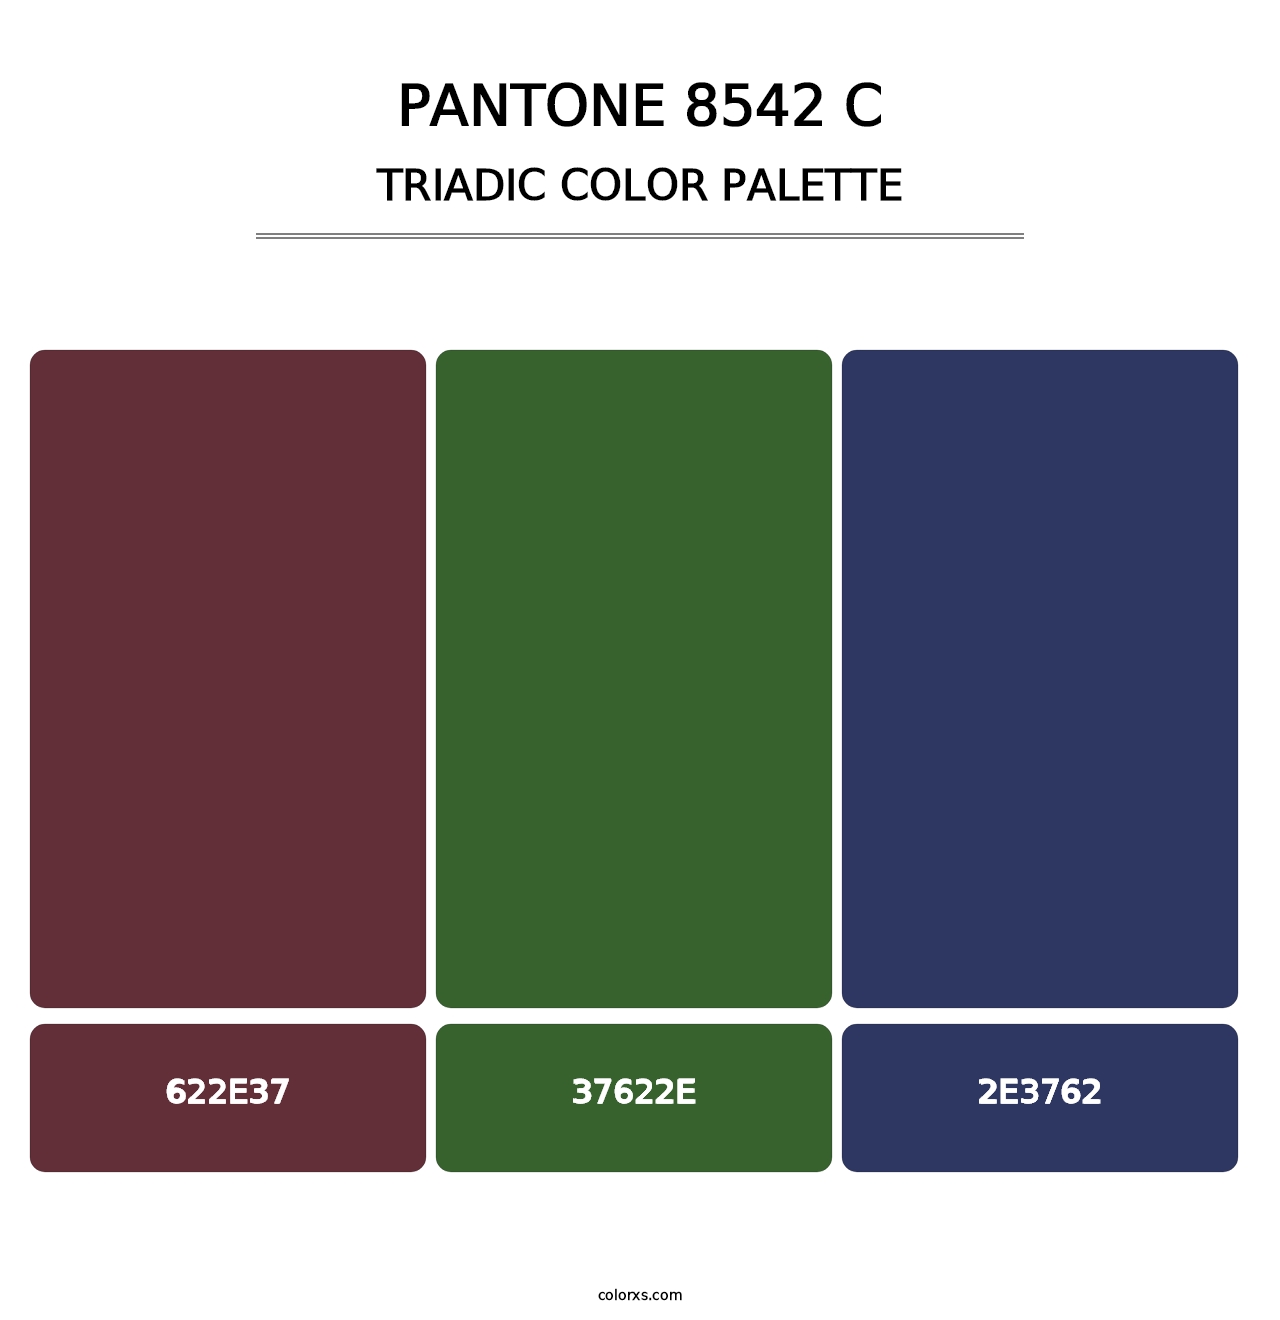 PANTONE 8542 C - Triadic Color Palette